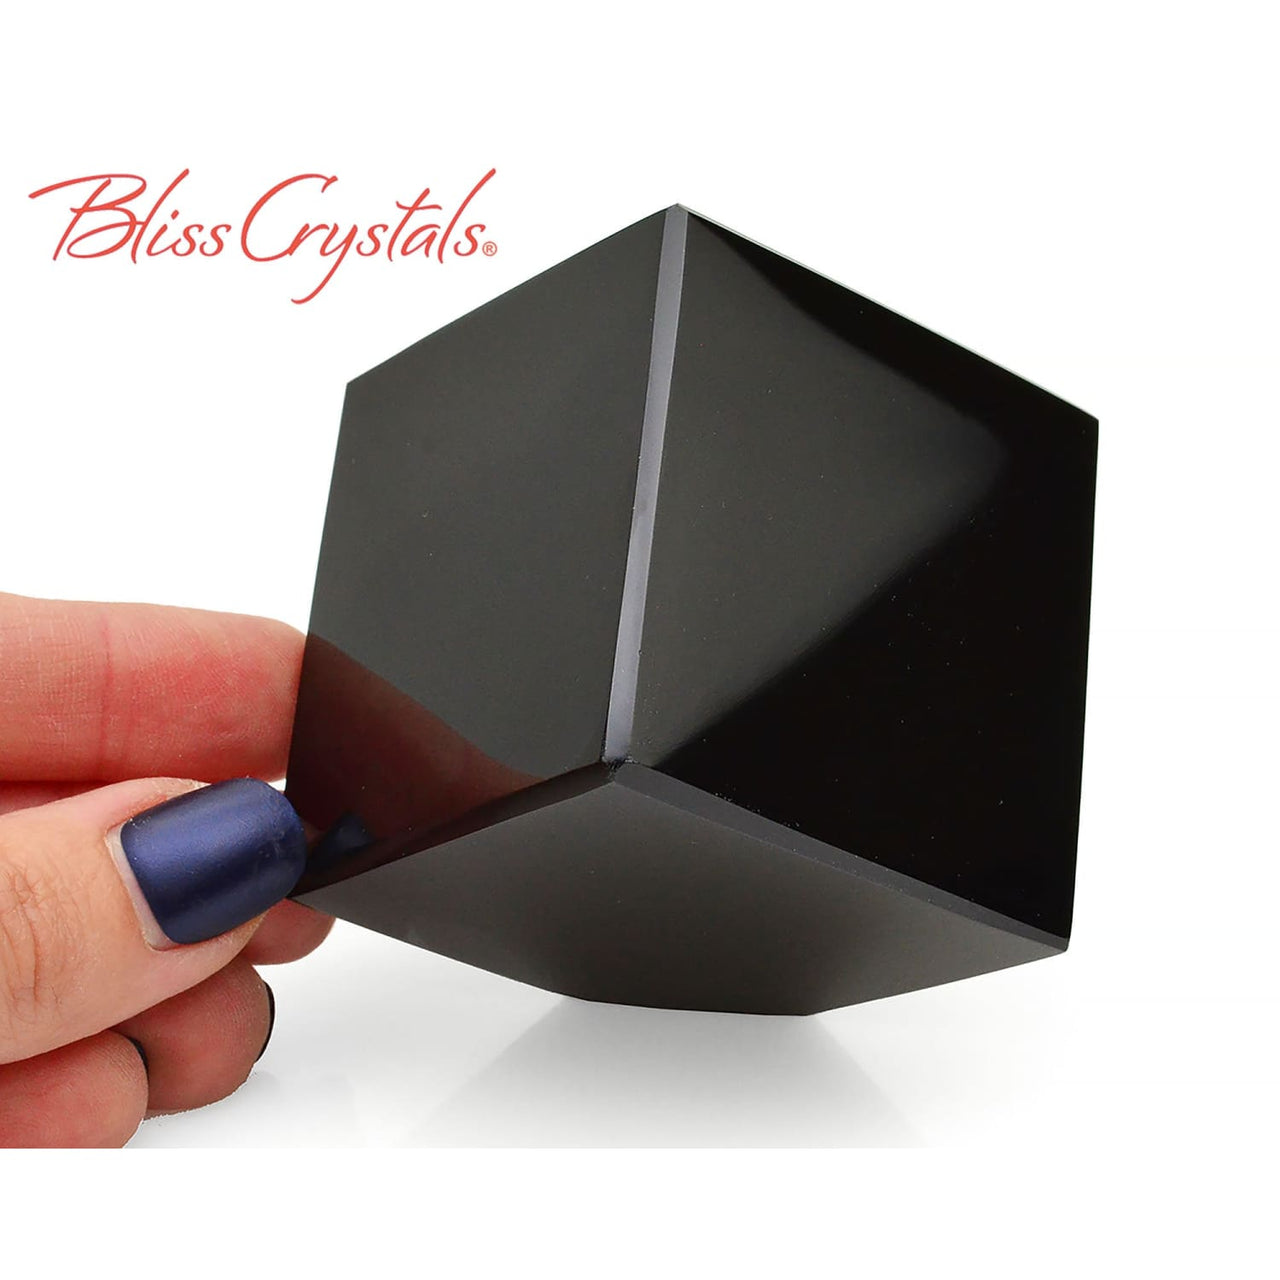 2 BLACK OBSIDIAN Cube Cut Polished Altar Stone #BM12